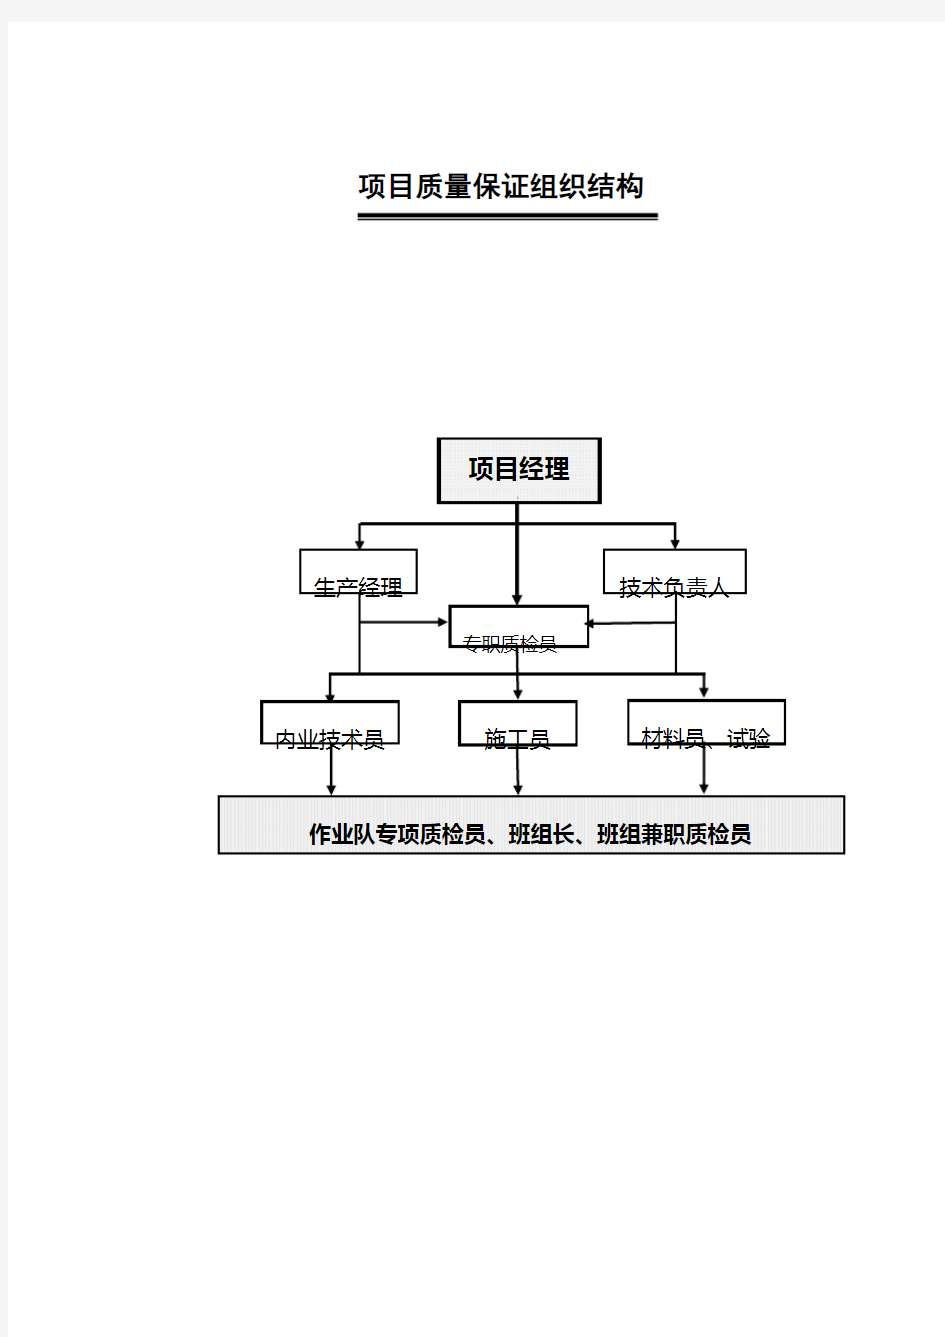 项目组织结构图